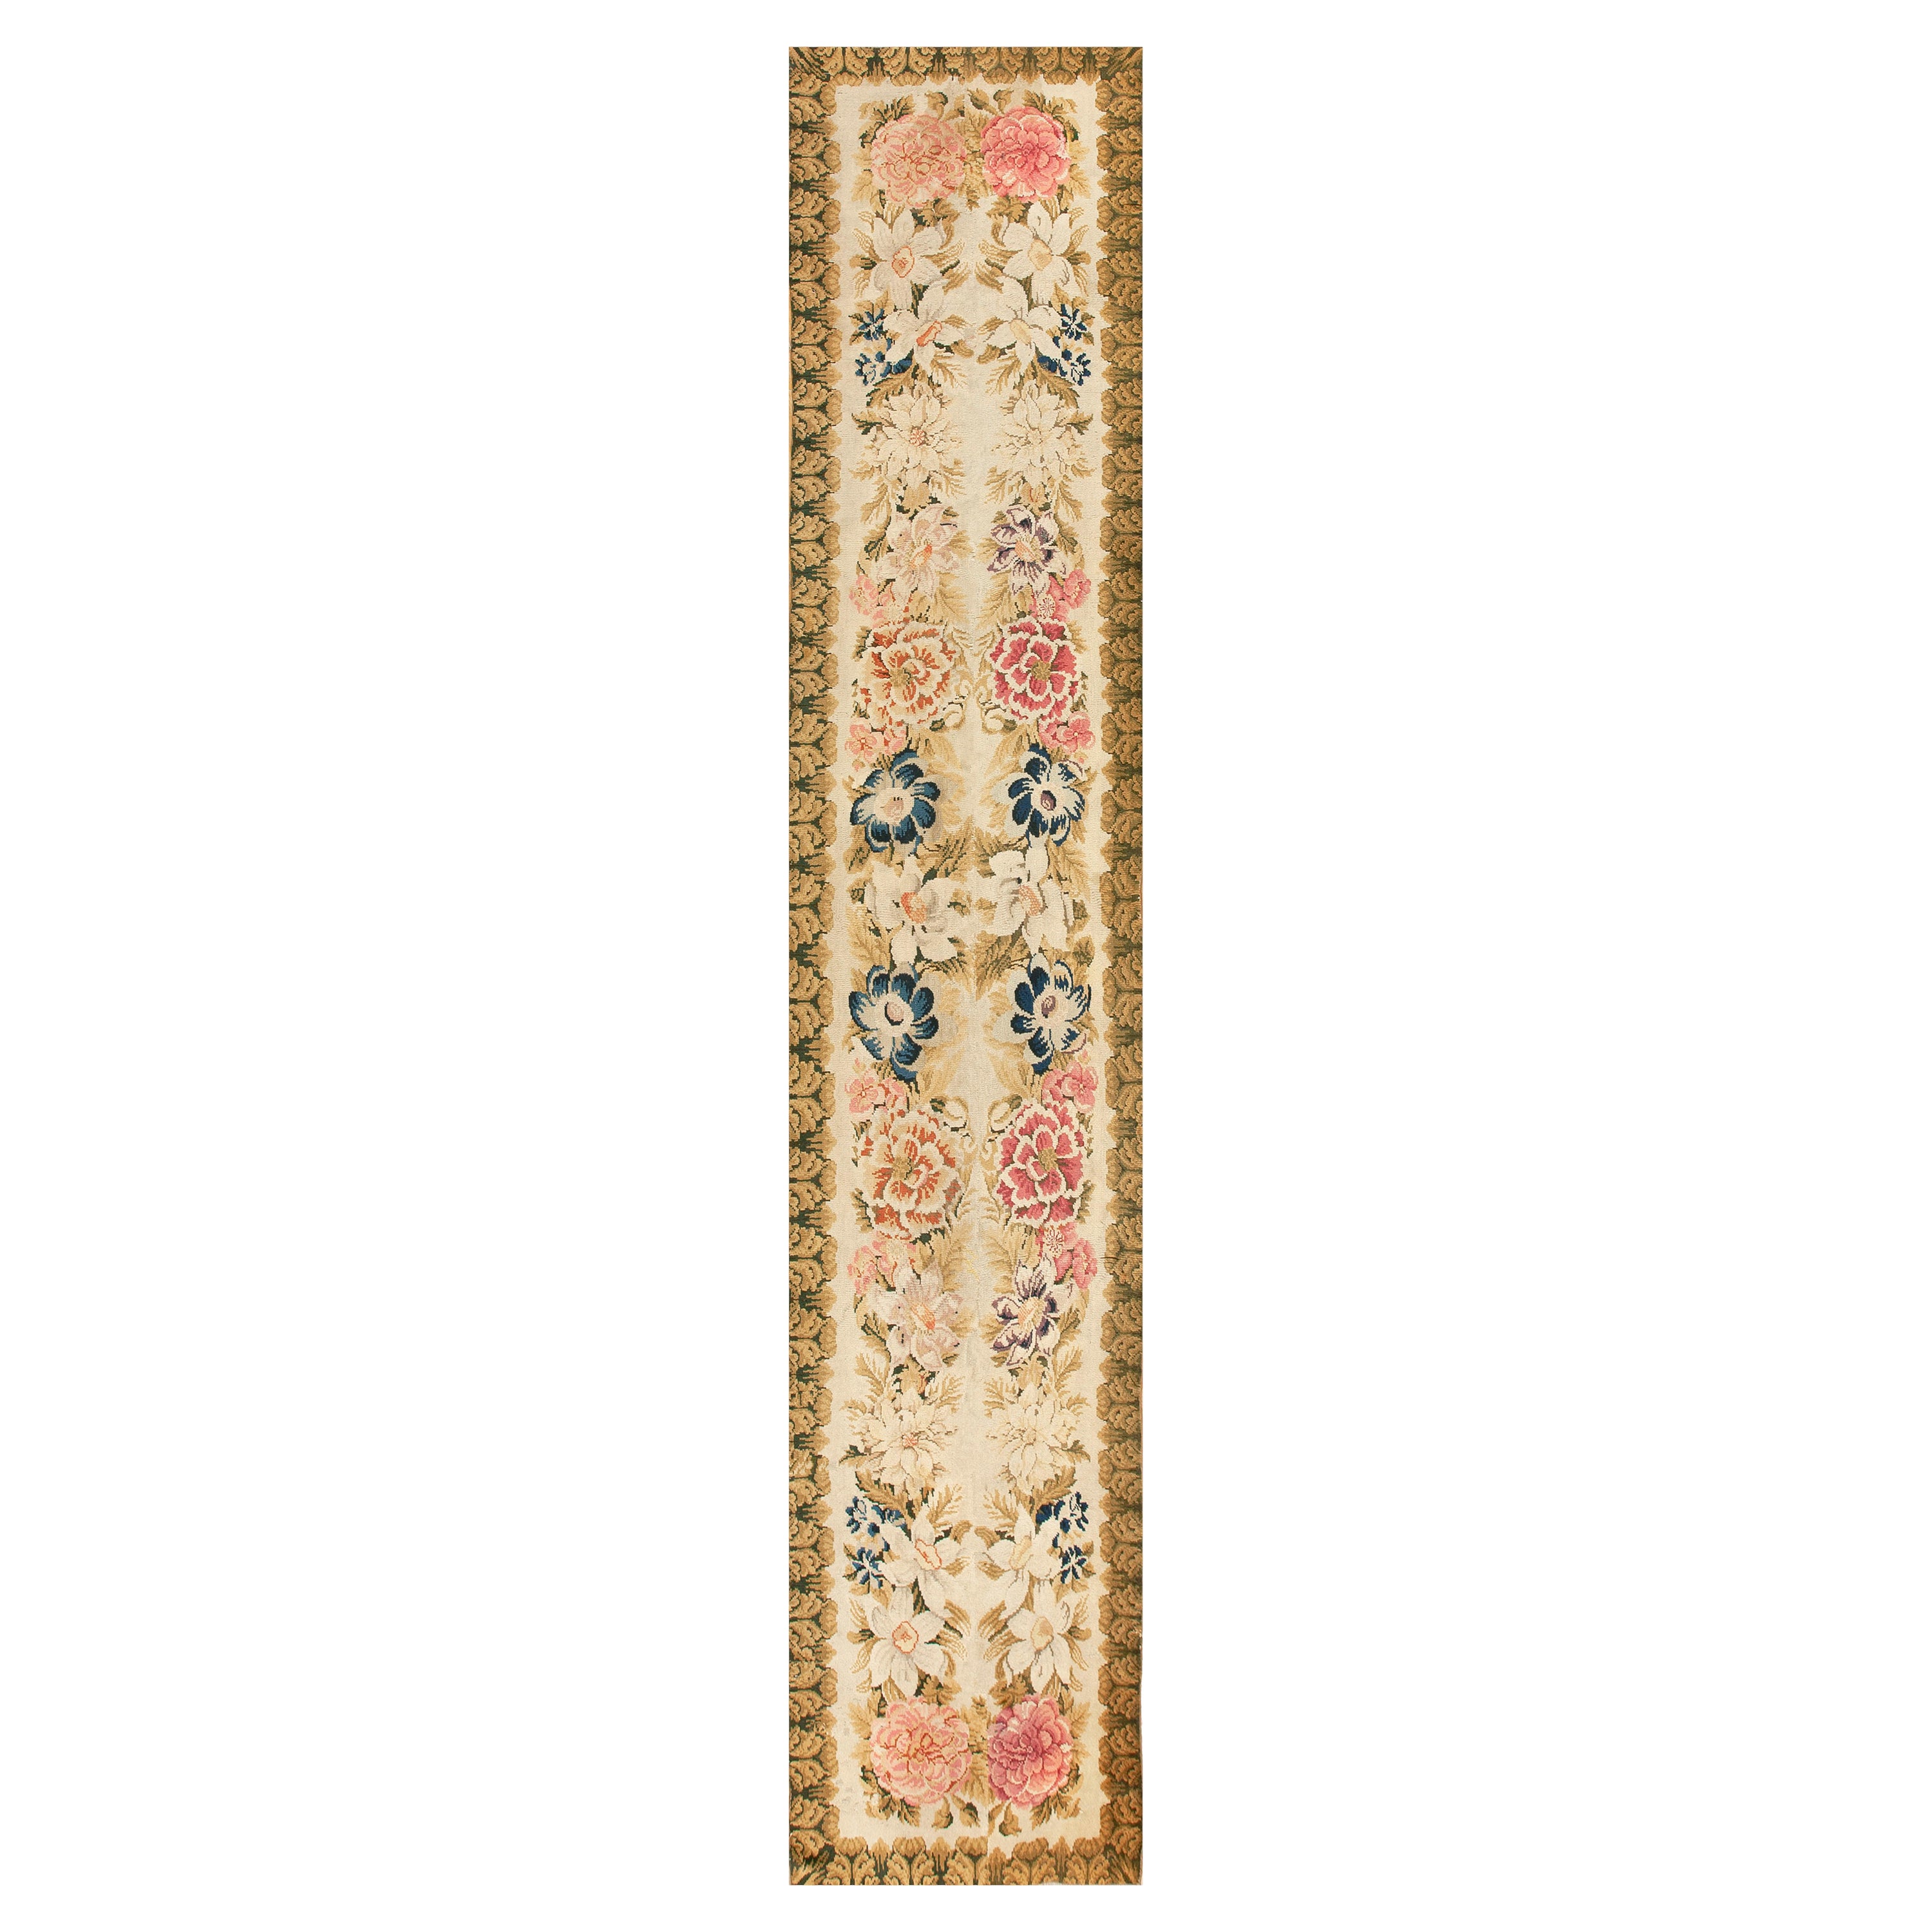 Tapis Axminster anglais du milieu du 18ème siècle ( 3''4"" x 17''4"" - 102 x 528 cm ) en vente